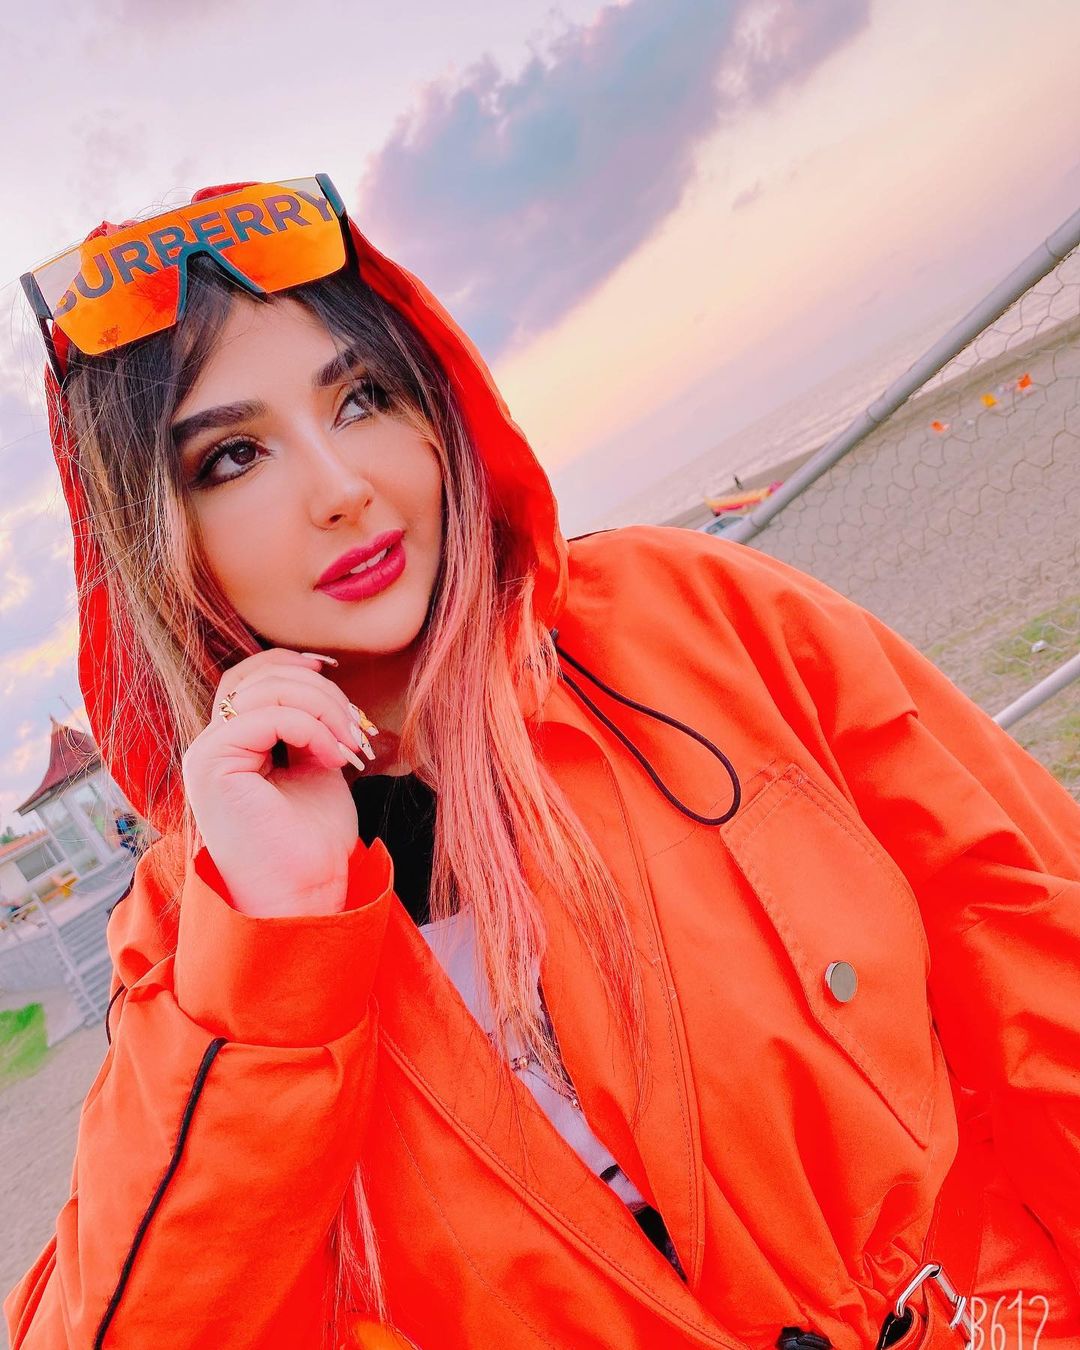 بیوگرافی سحر الهی،مدلینگ و بلاگر محبوب اینستاگرام و روابطش